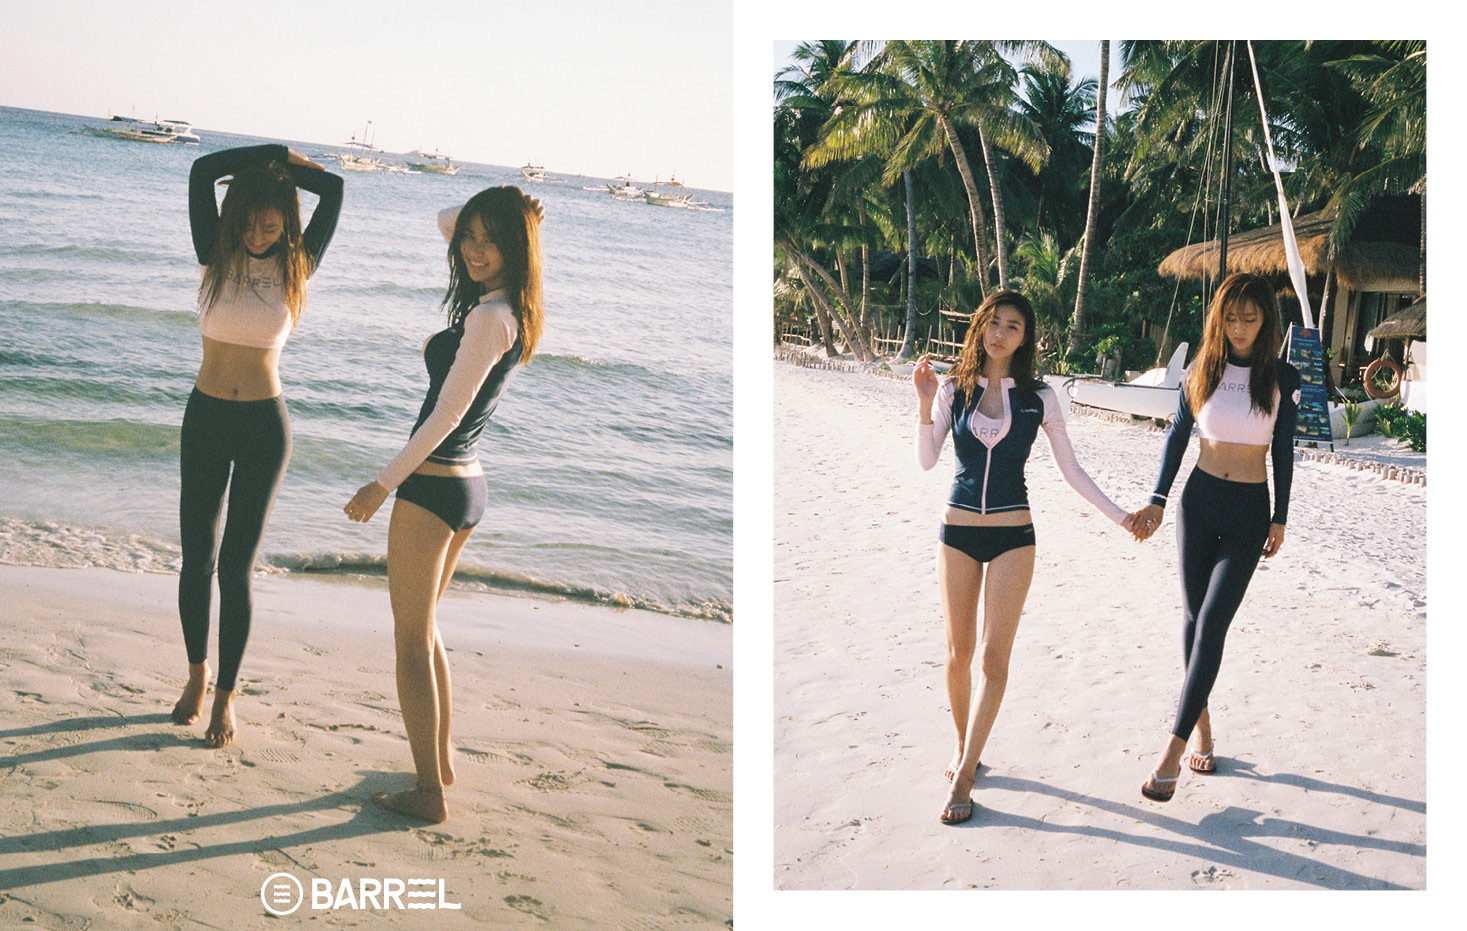 [OTHER][15-04-2016]Yuri trở thành người mẫu mới cho thương hiệu đồ bơi "BARREL" Yurivivian_boracay4